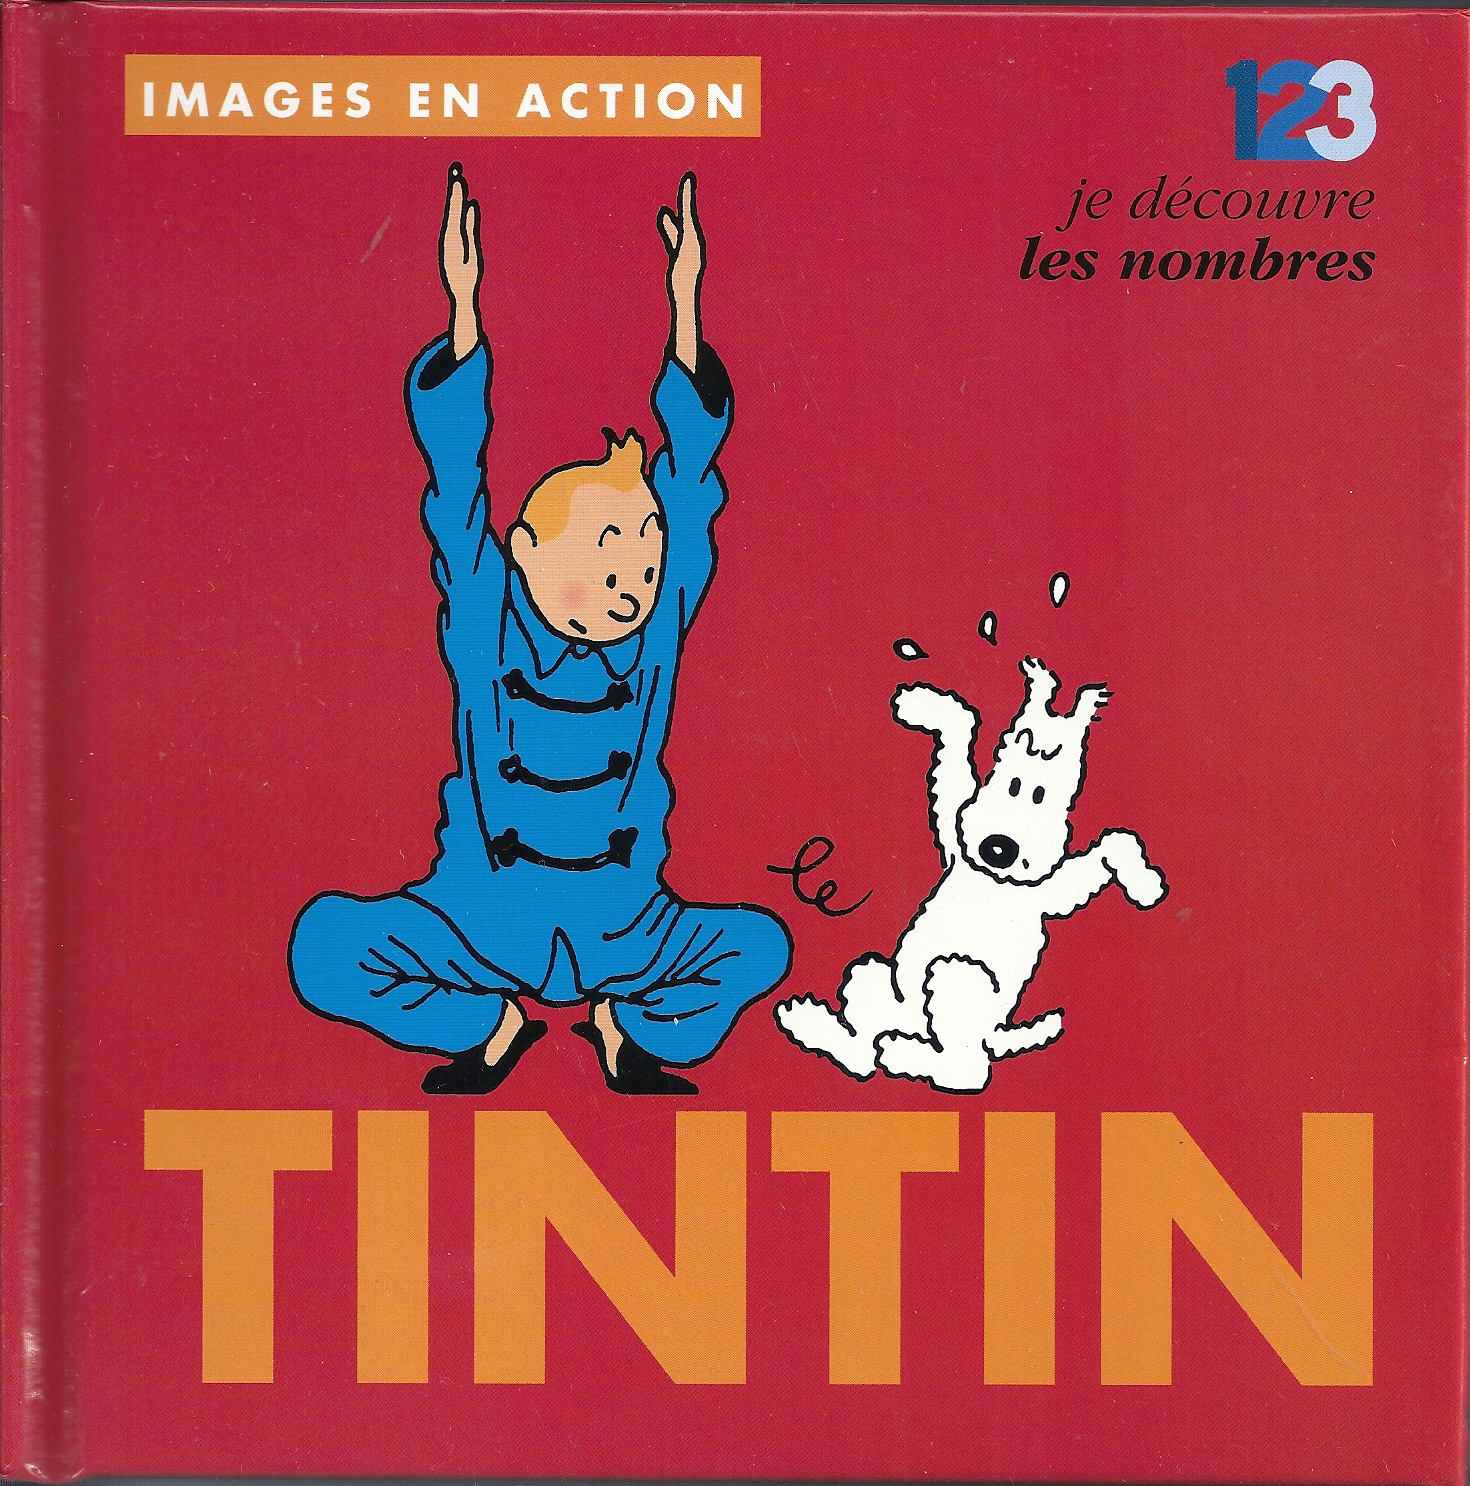 Tintin Hergé images en action je découvre les nombres livre enfant